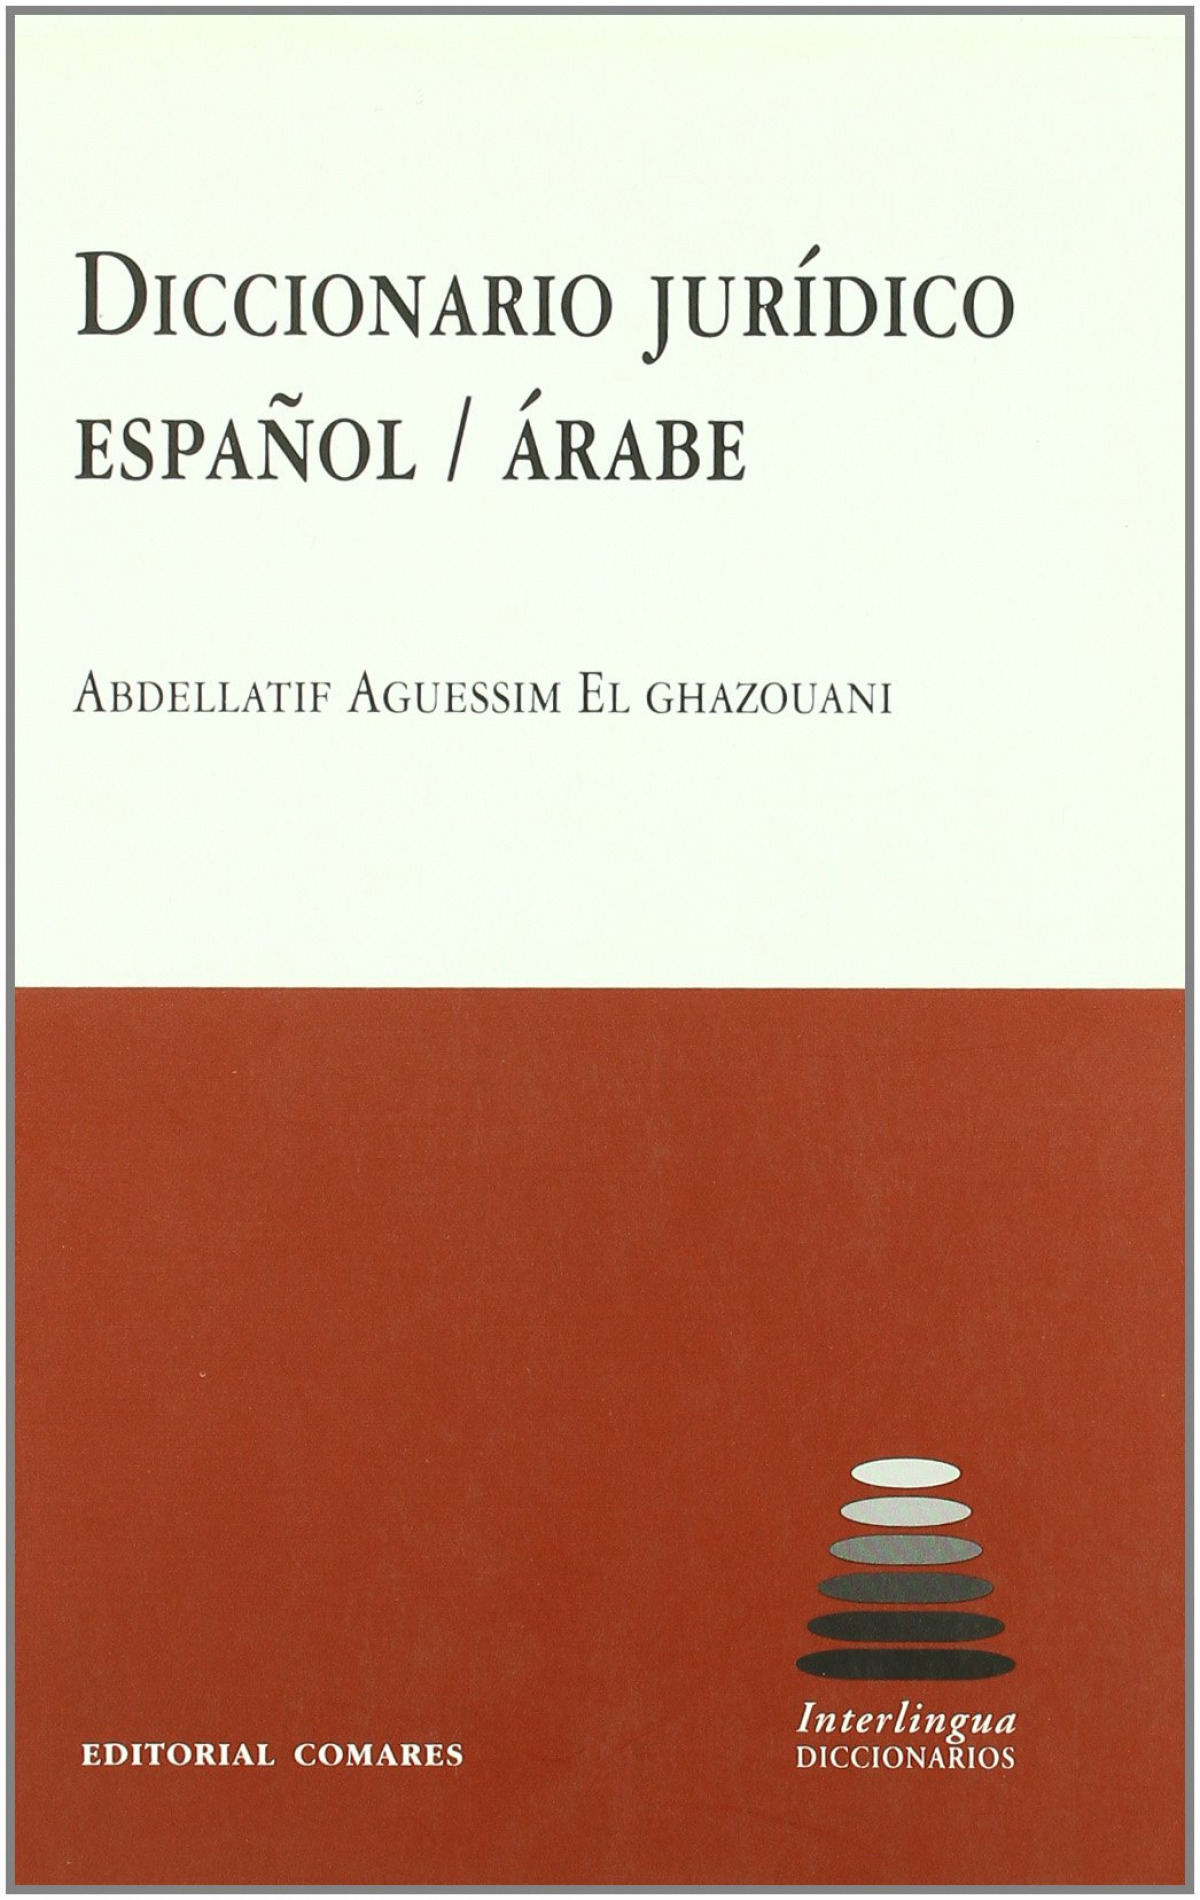 Diccionario juridico español-arabe - Aguessim El Ghazouani, Abdellatif